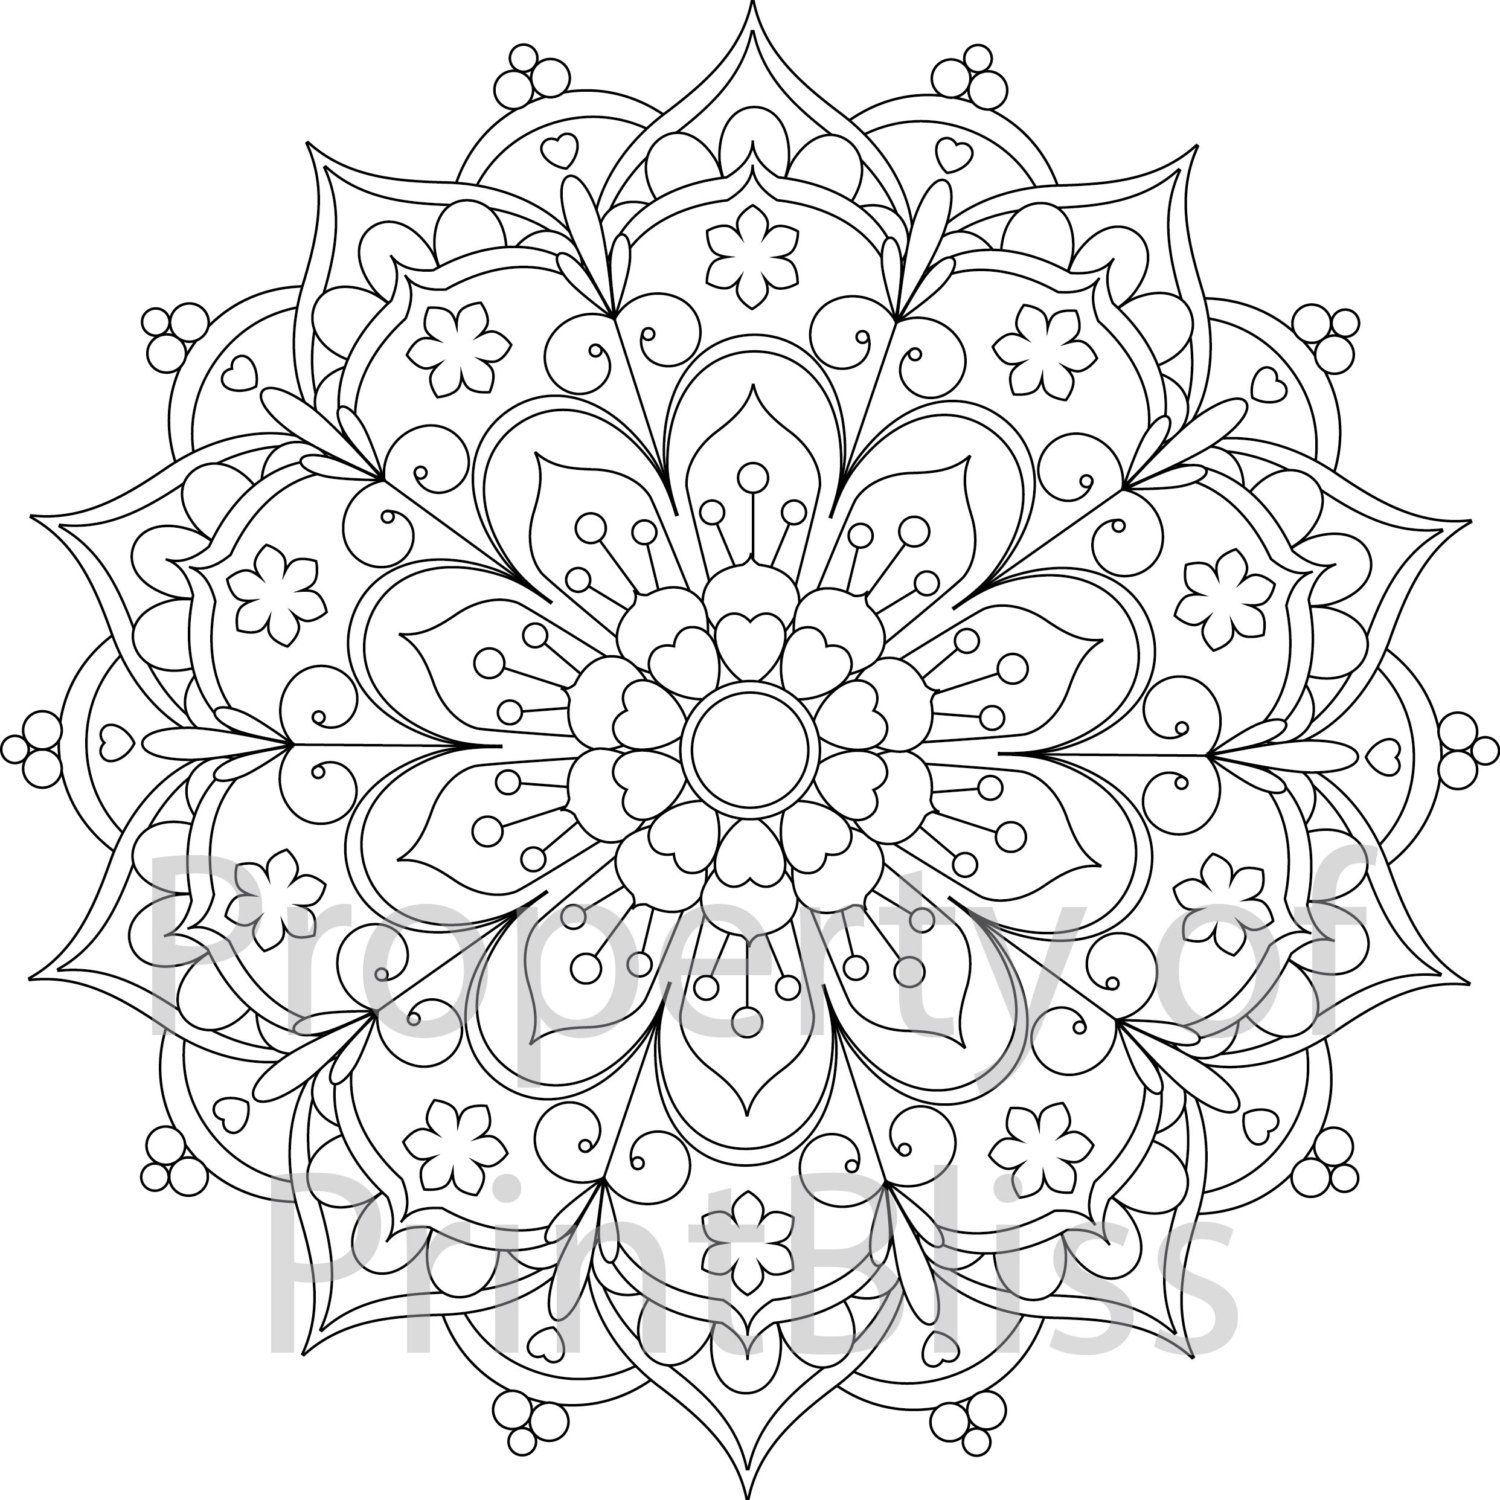 Lotus Flower Mandala Coloring Pages at GetColorings.com ...